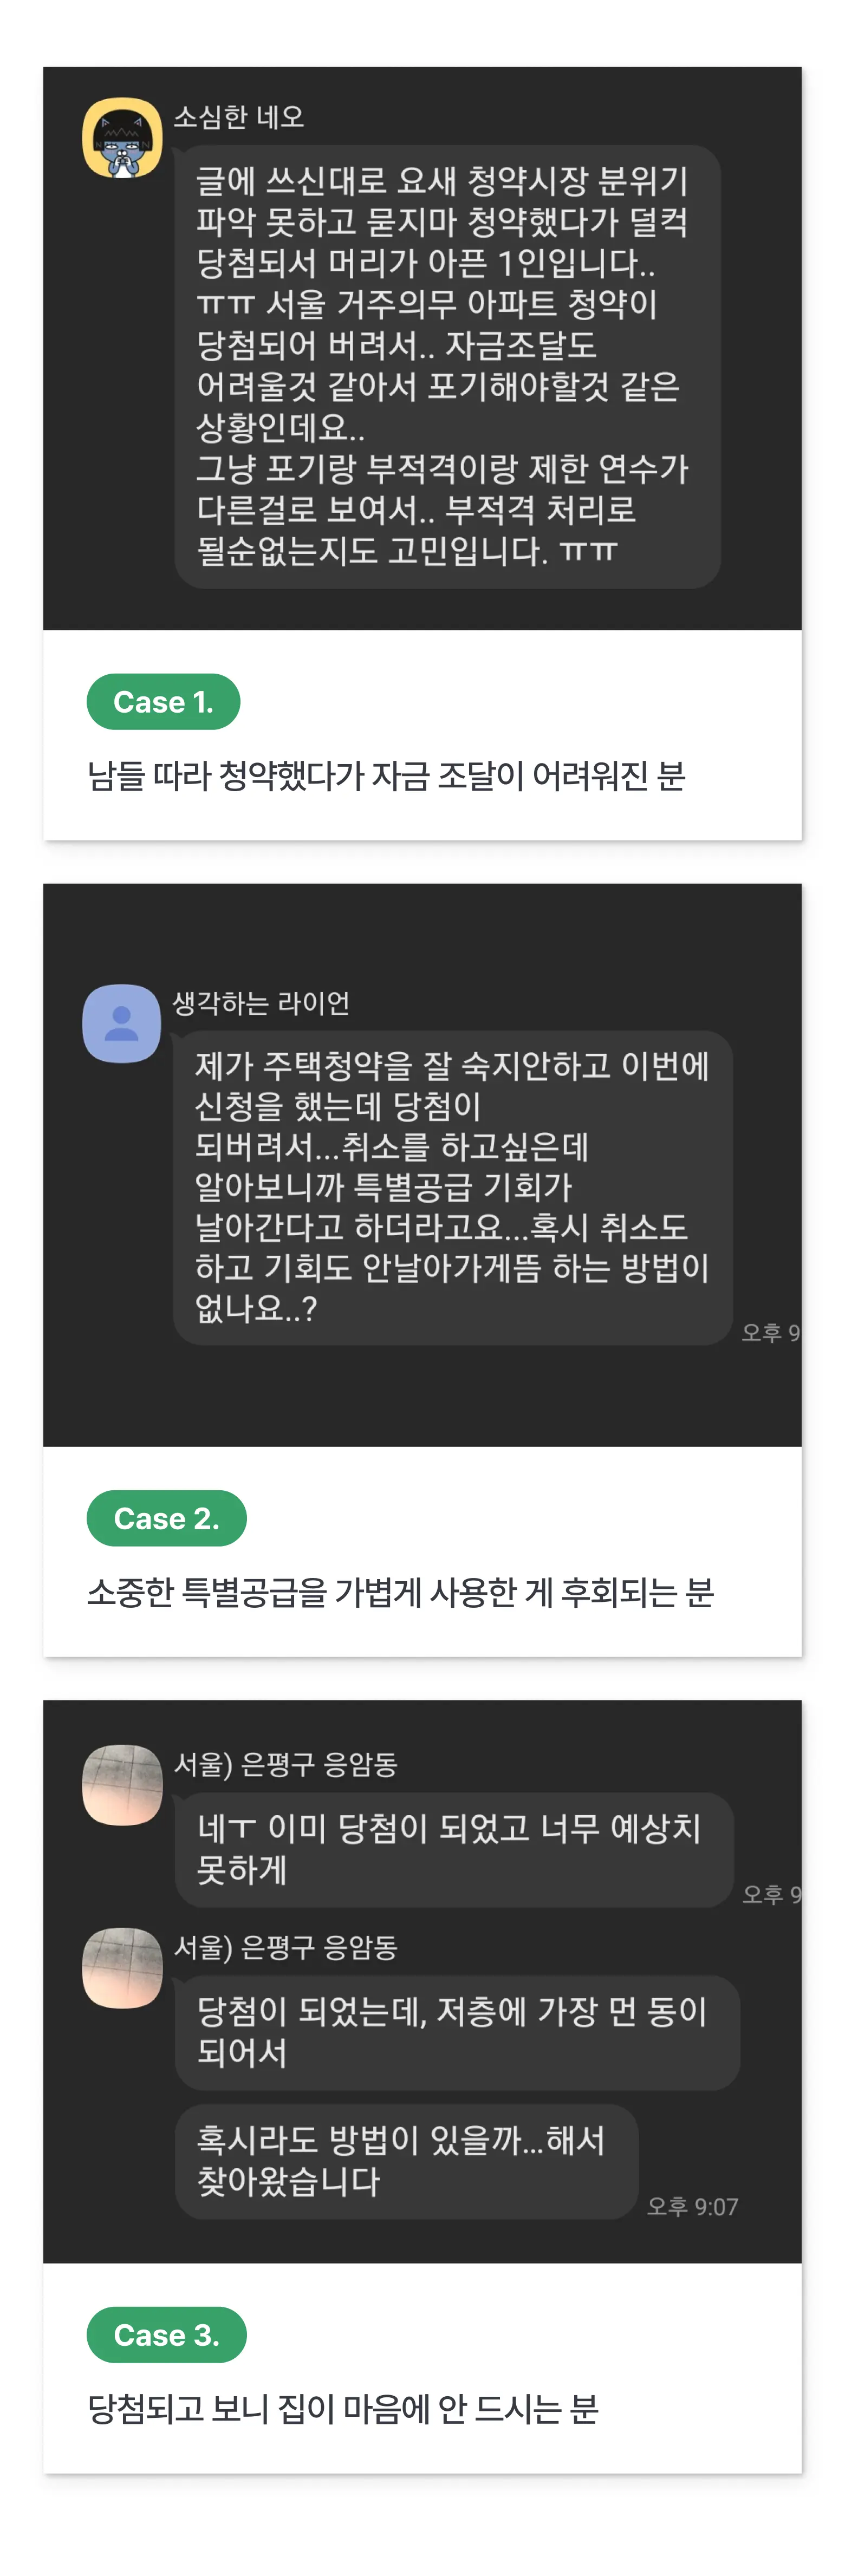 [ 23년 12월 사전청약 에디션 ] - 한국분양정보